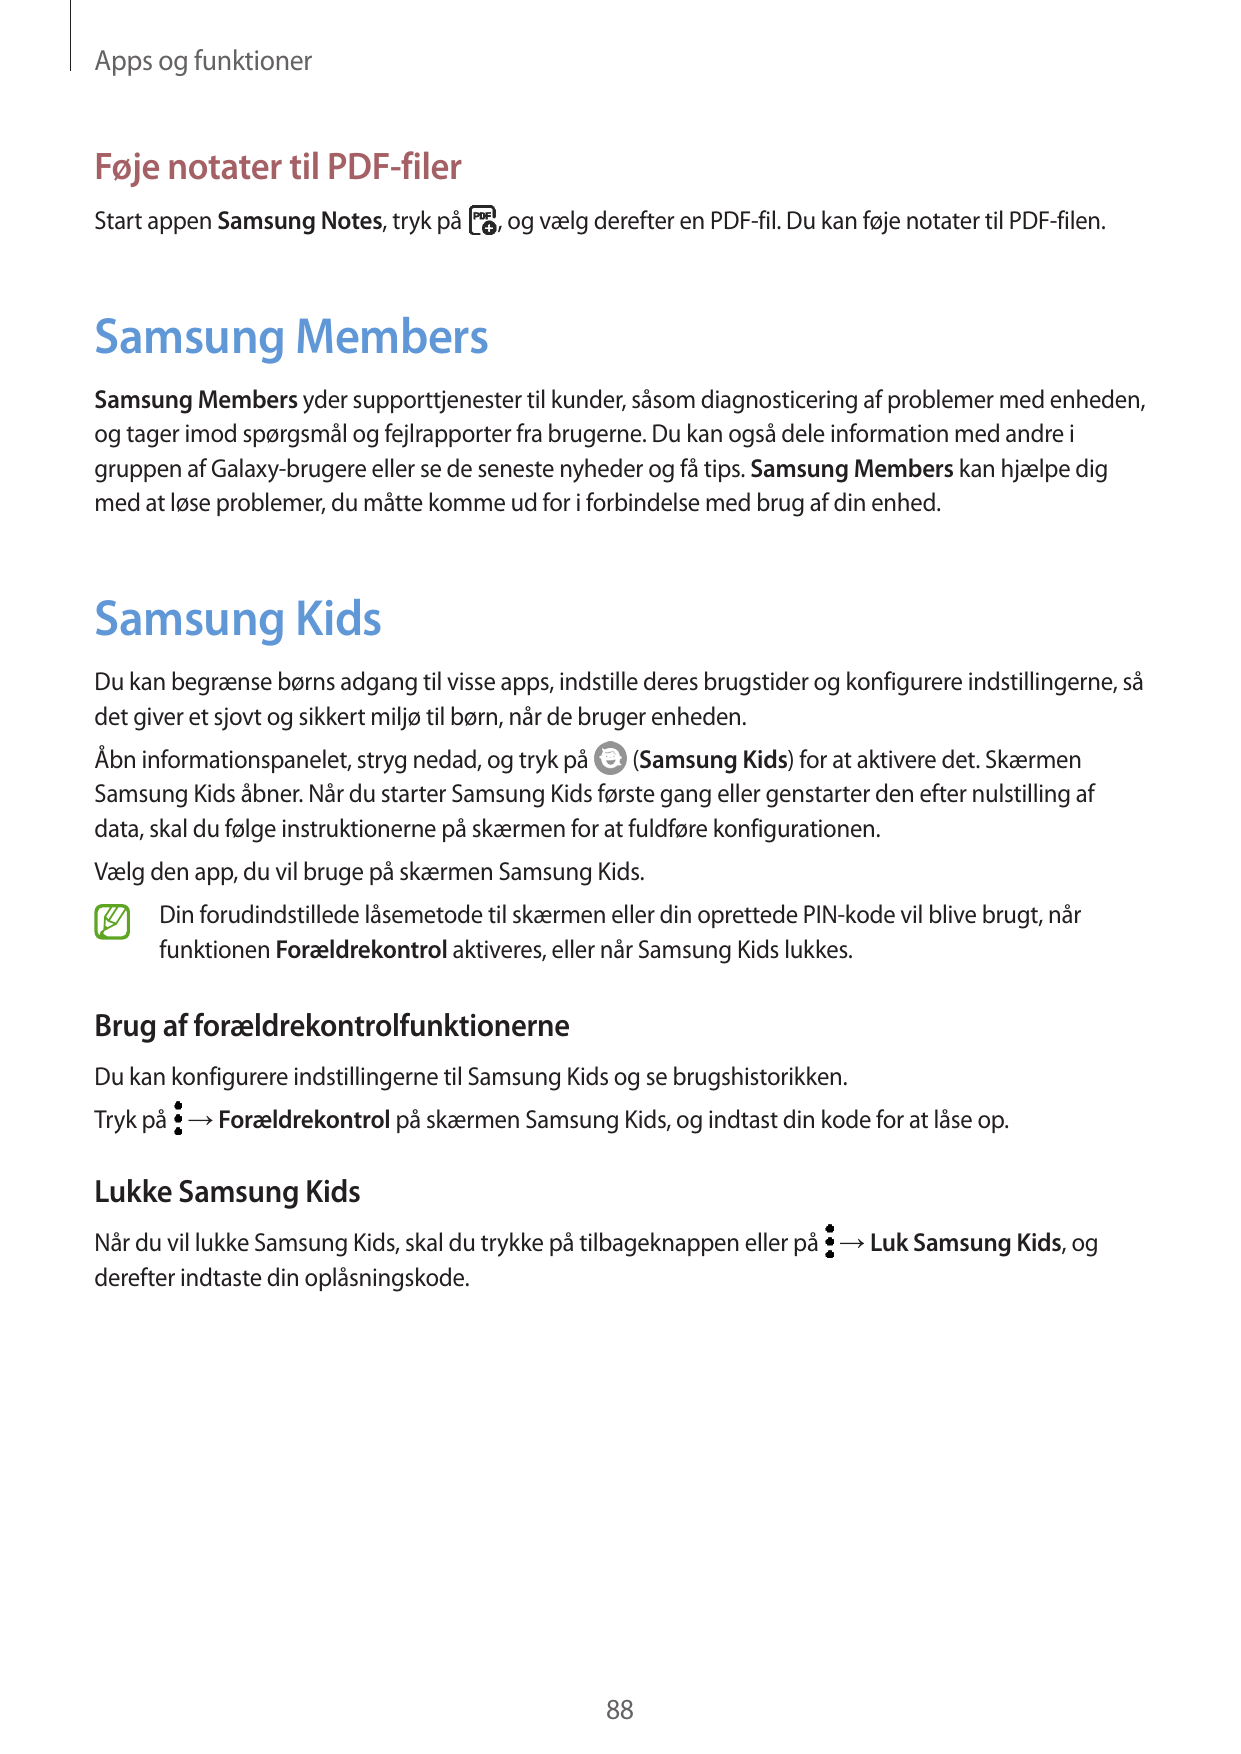 Apps og funktionerFøje notater til PDF-filerStart appen Samsung Notes, tryk på, og vælg derefter en PDF-fil. Du kan føje notater